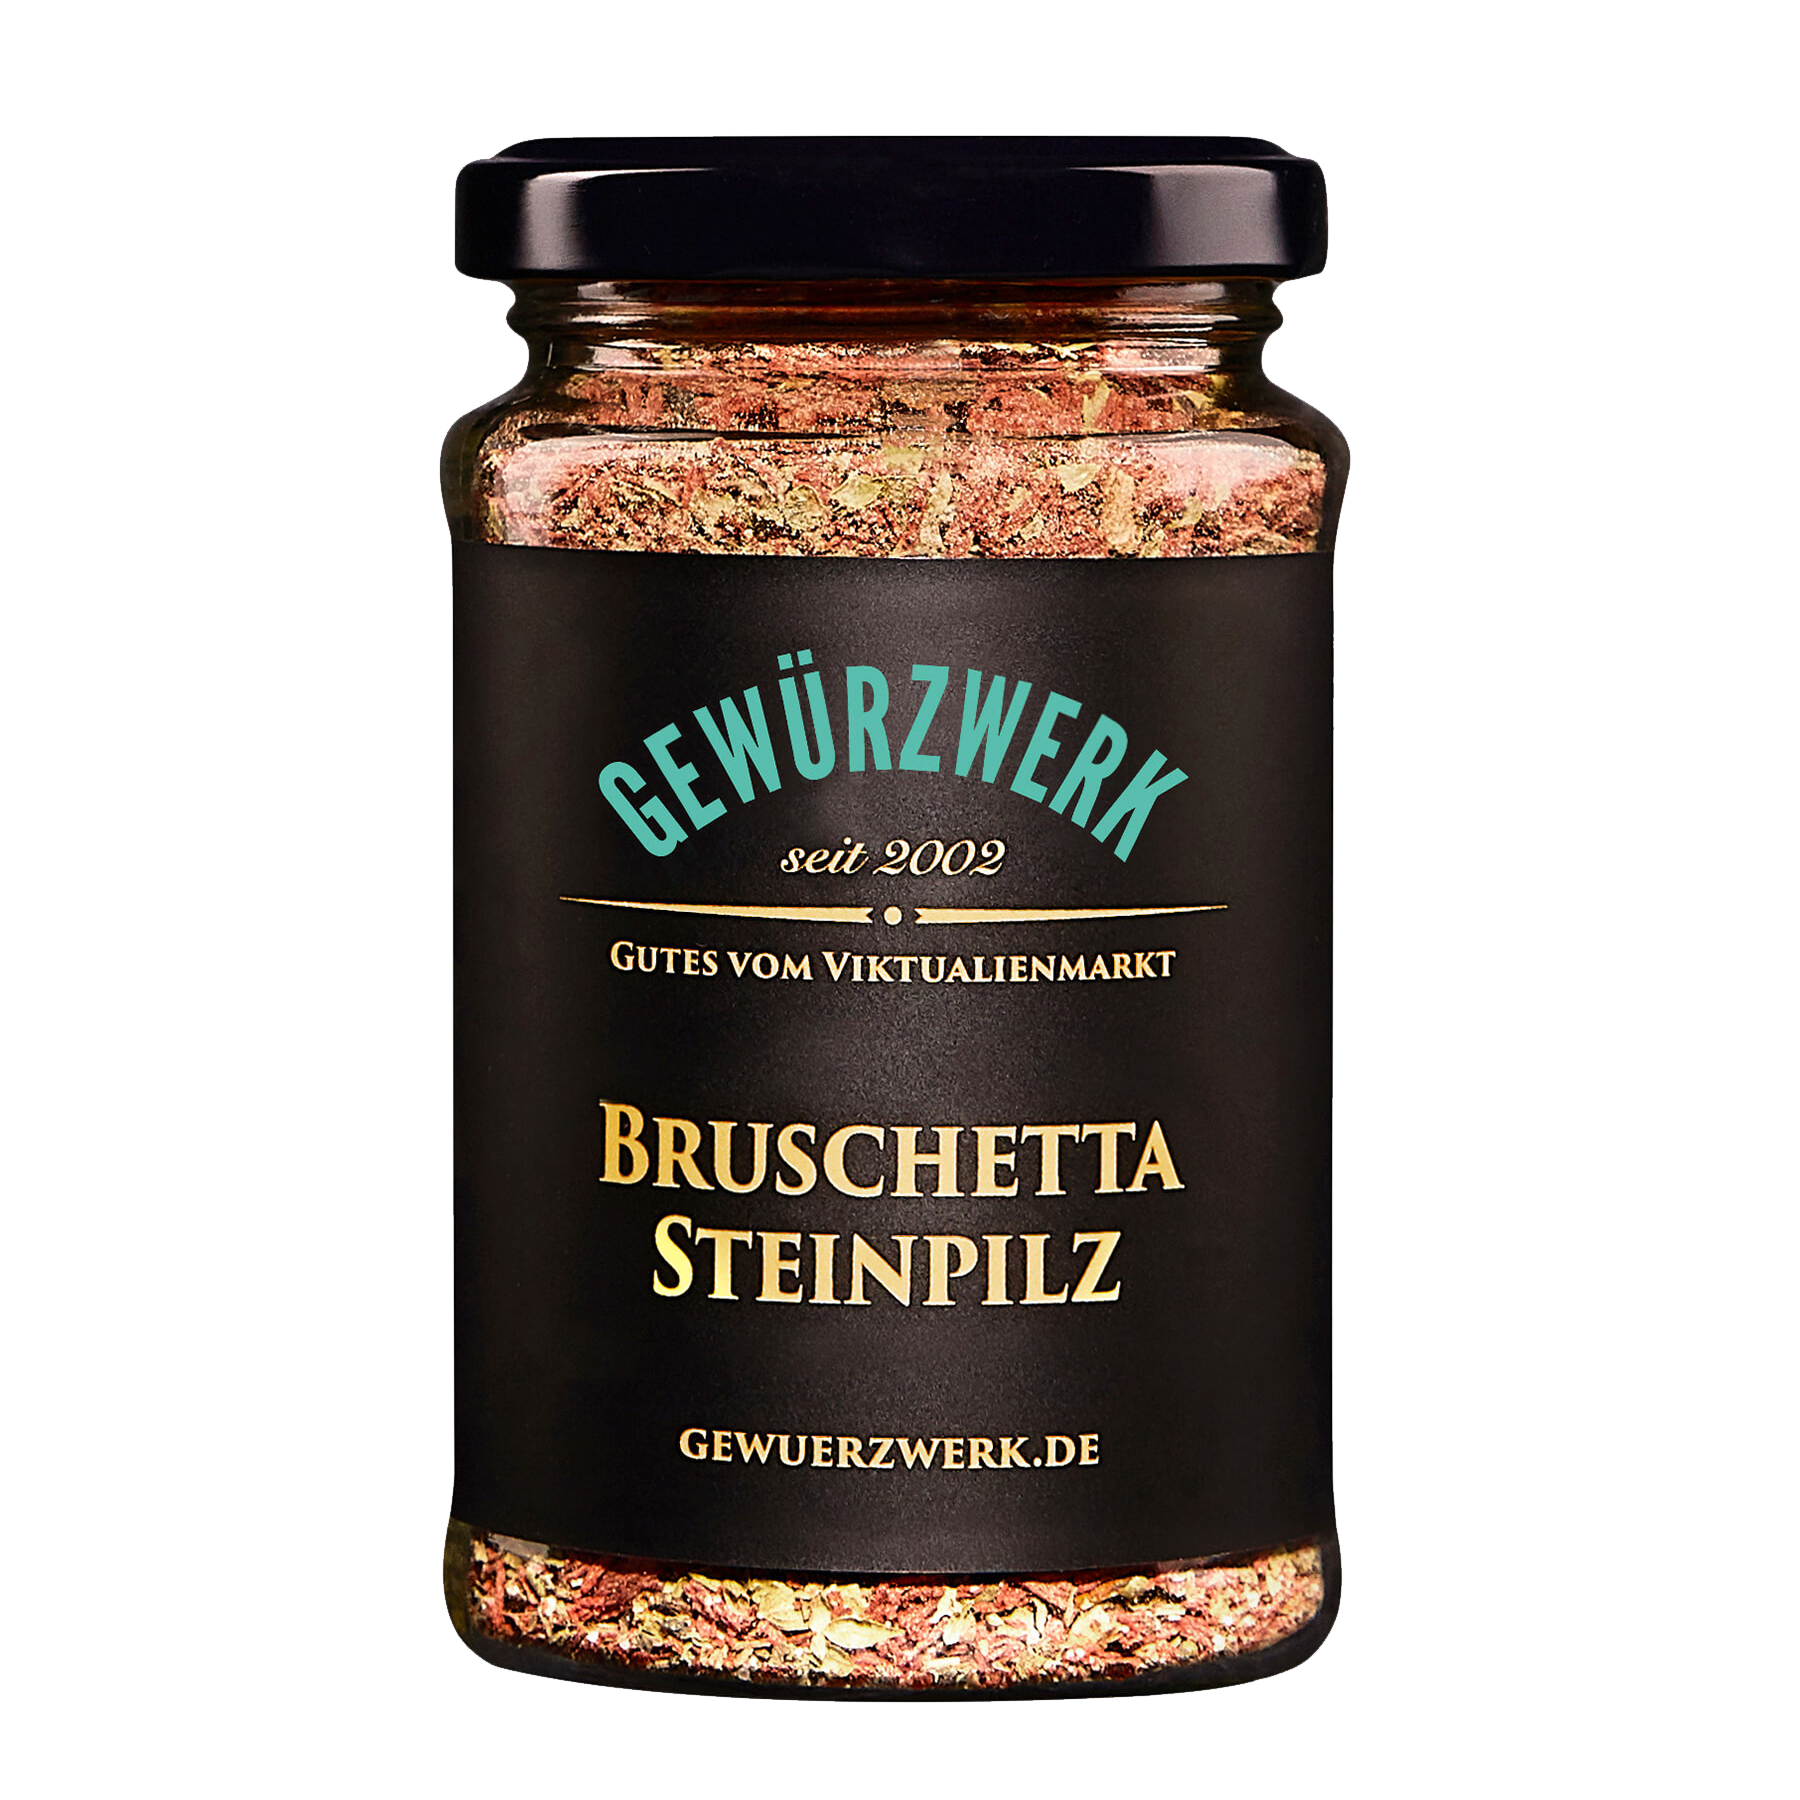 Bruschetta Steinpilz